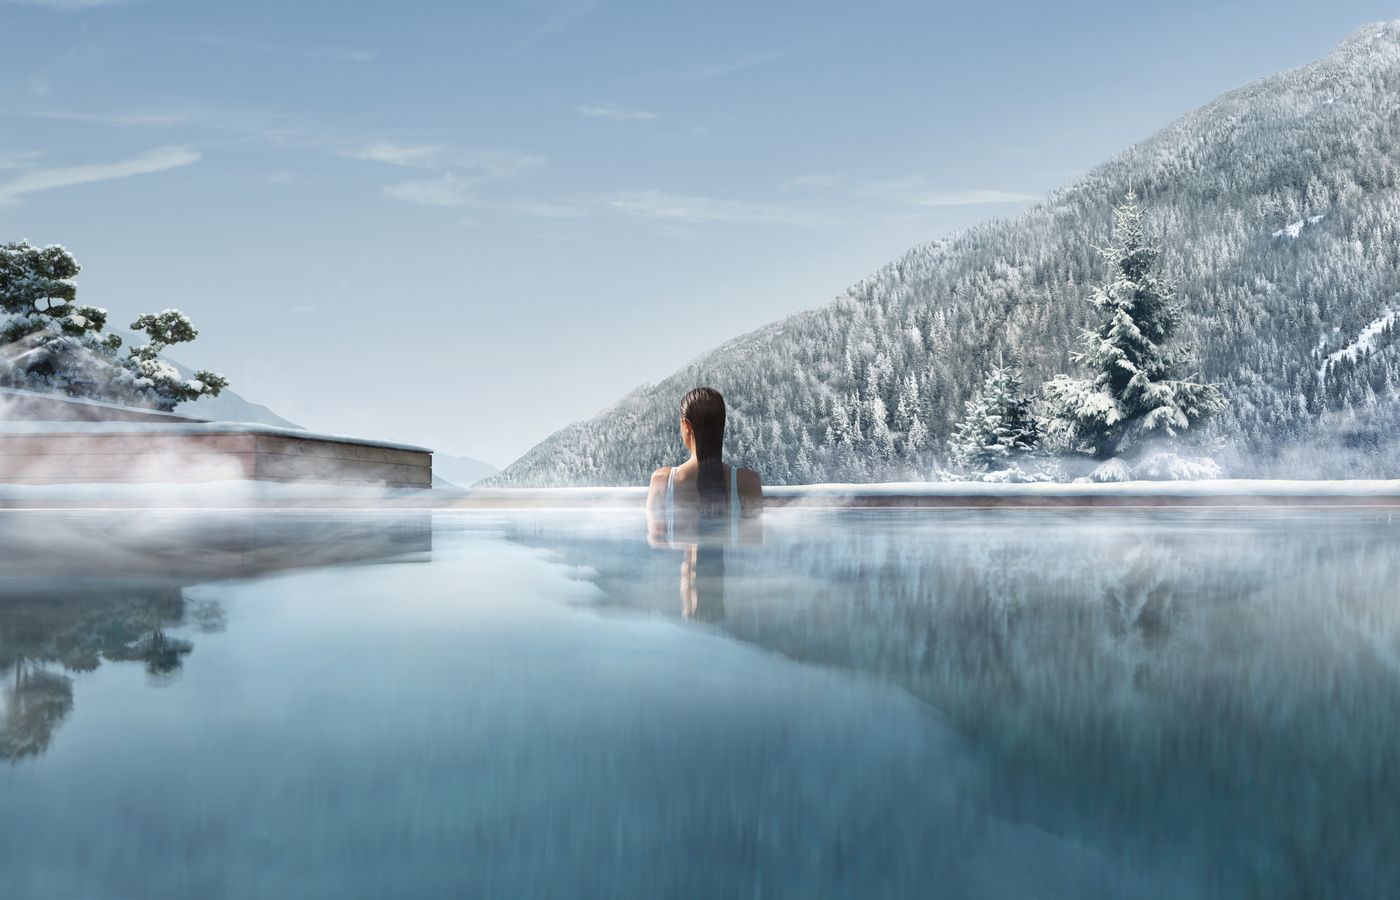 Trip Formentera - FitReisen - Lefay Resort & Spa Dolomiti in Pinzolo buche jetzt Deinen Wellness & Beauty Urlaub im Lefay Resort & Spa Dolomiti in der Region Südtirol, in Italien günstig bei uns!